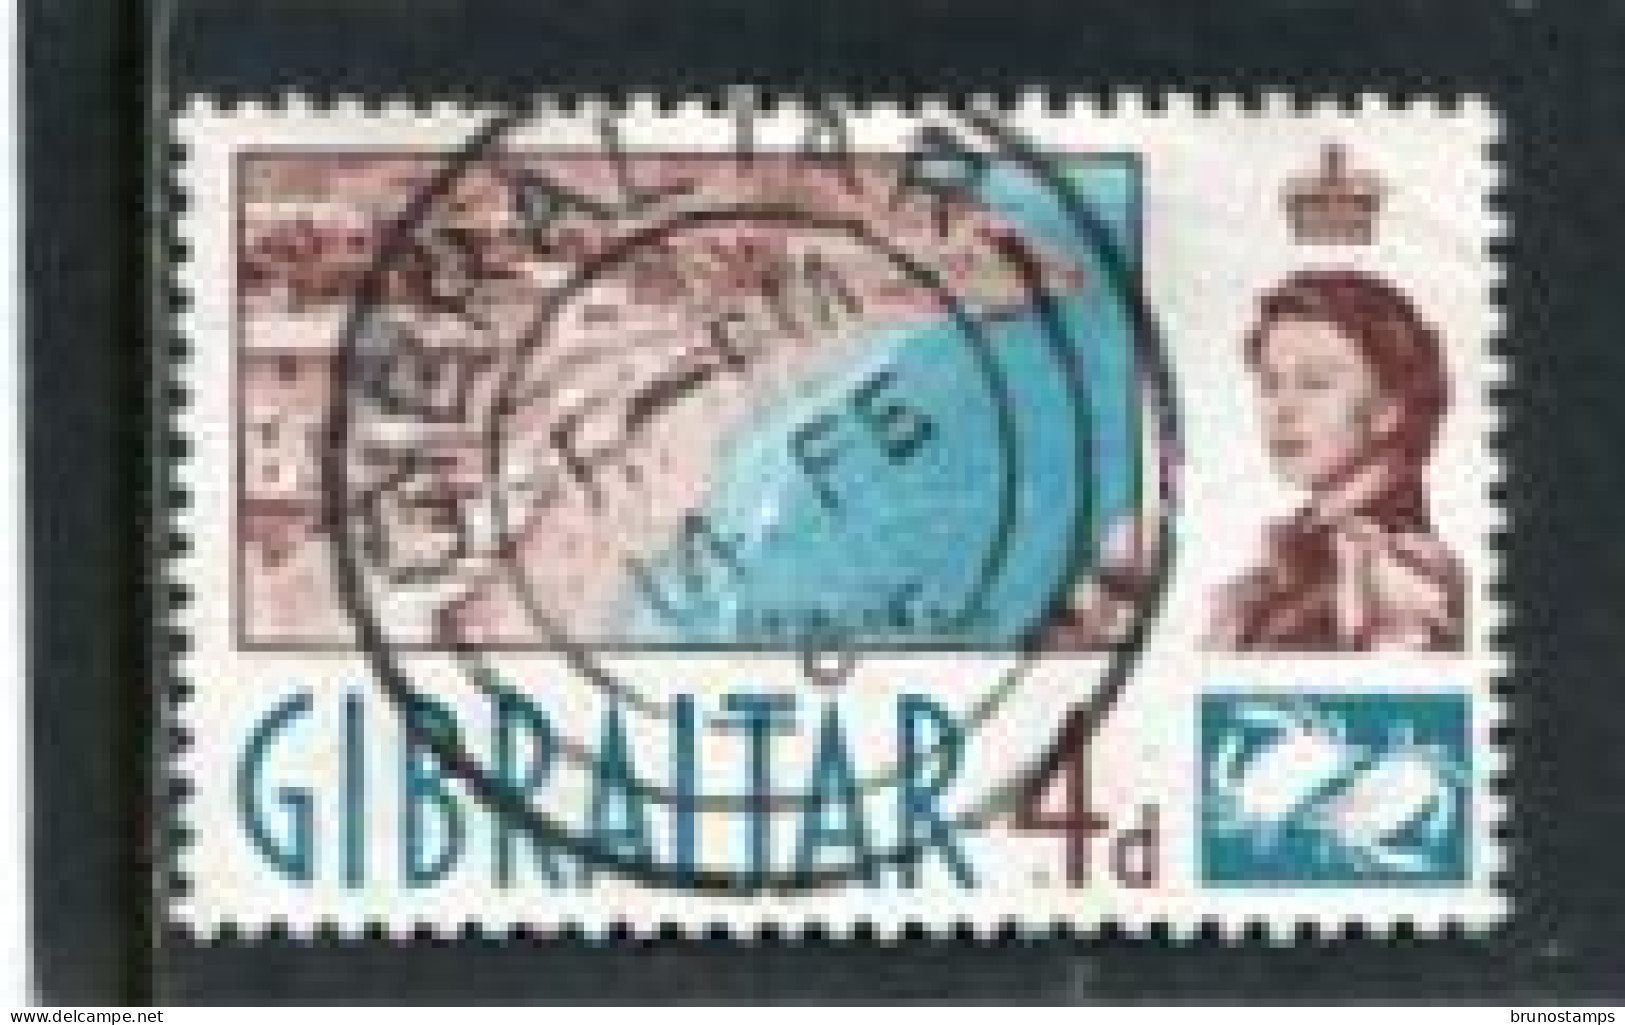 GIBRALTAR - 1960  4d  DEFINITIVE  FINE USED - Gibraltar